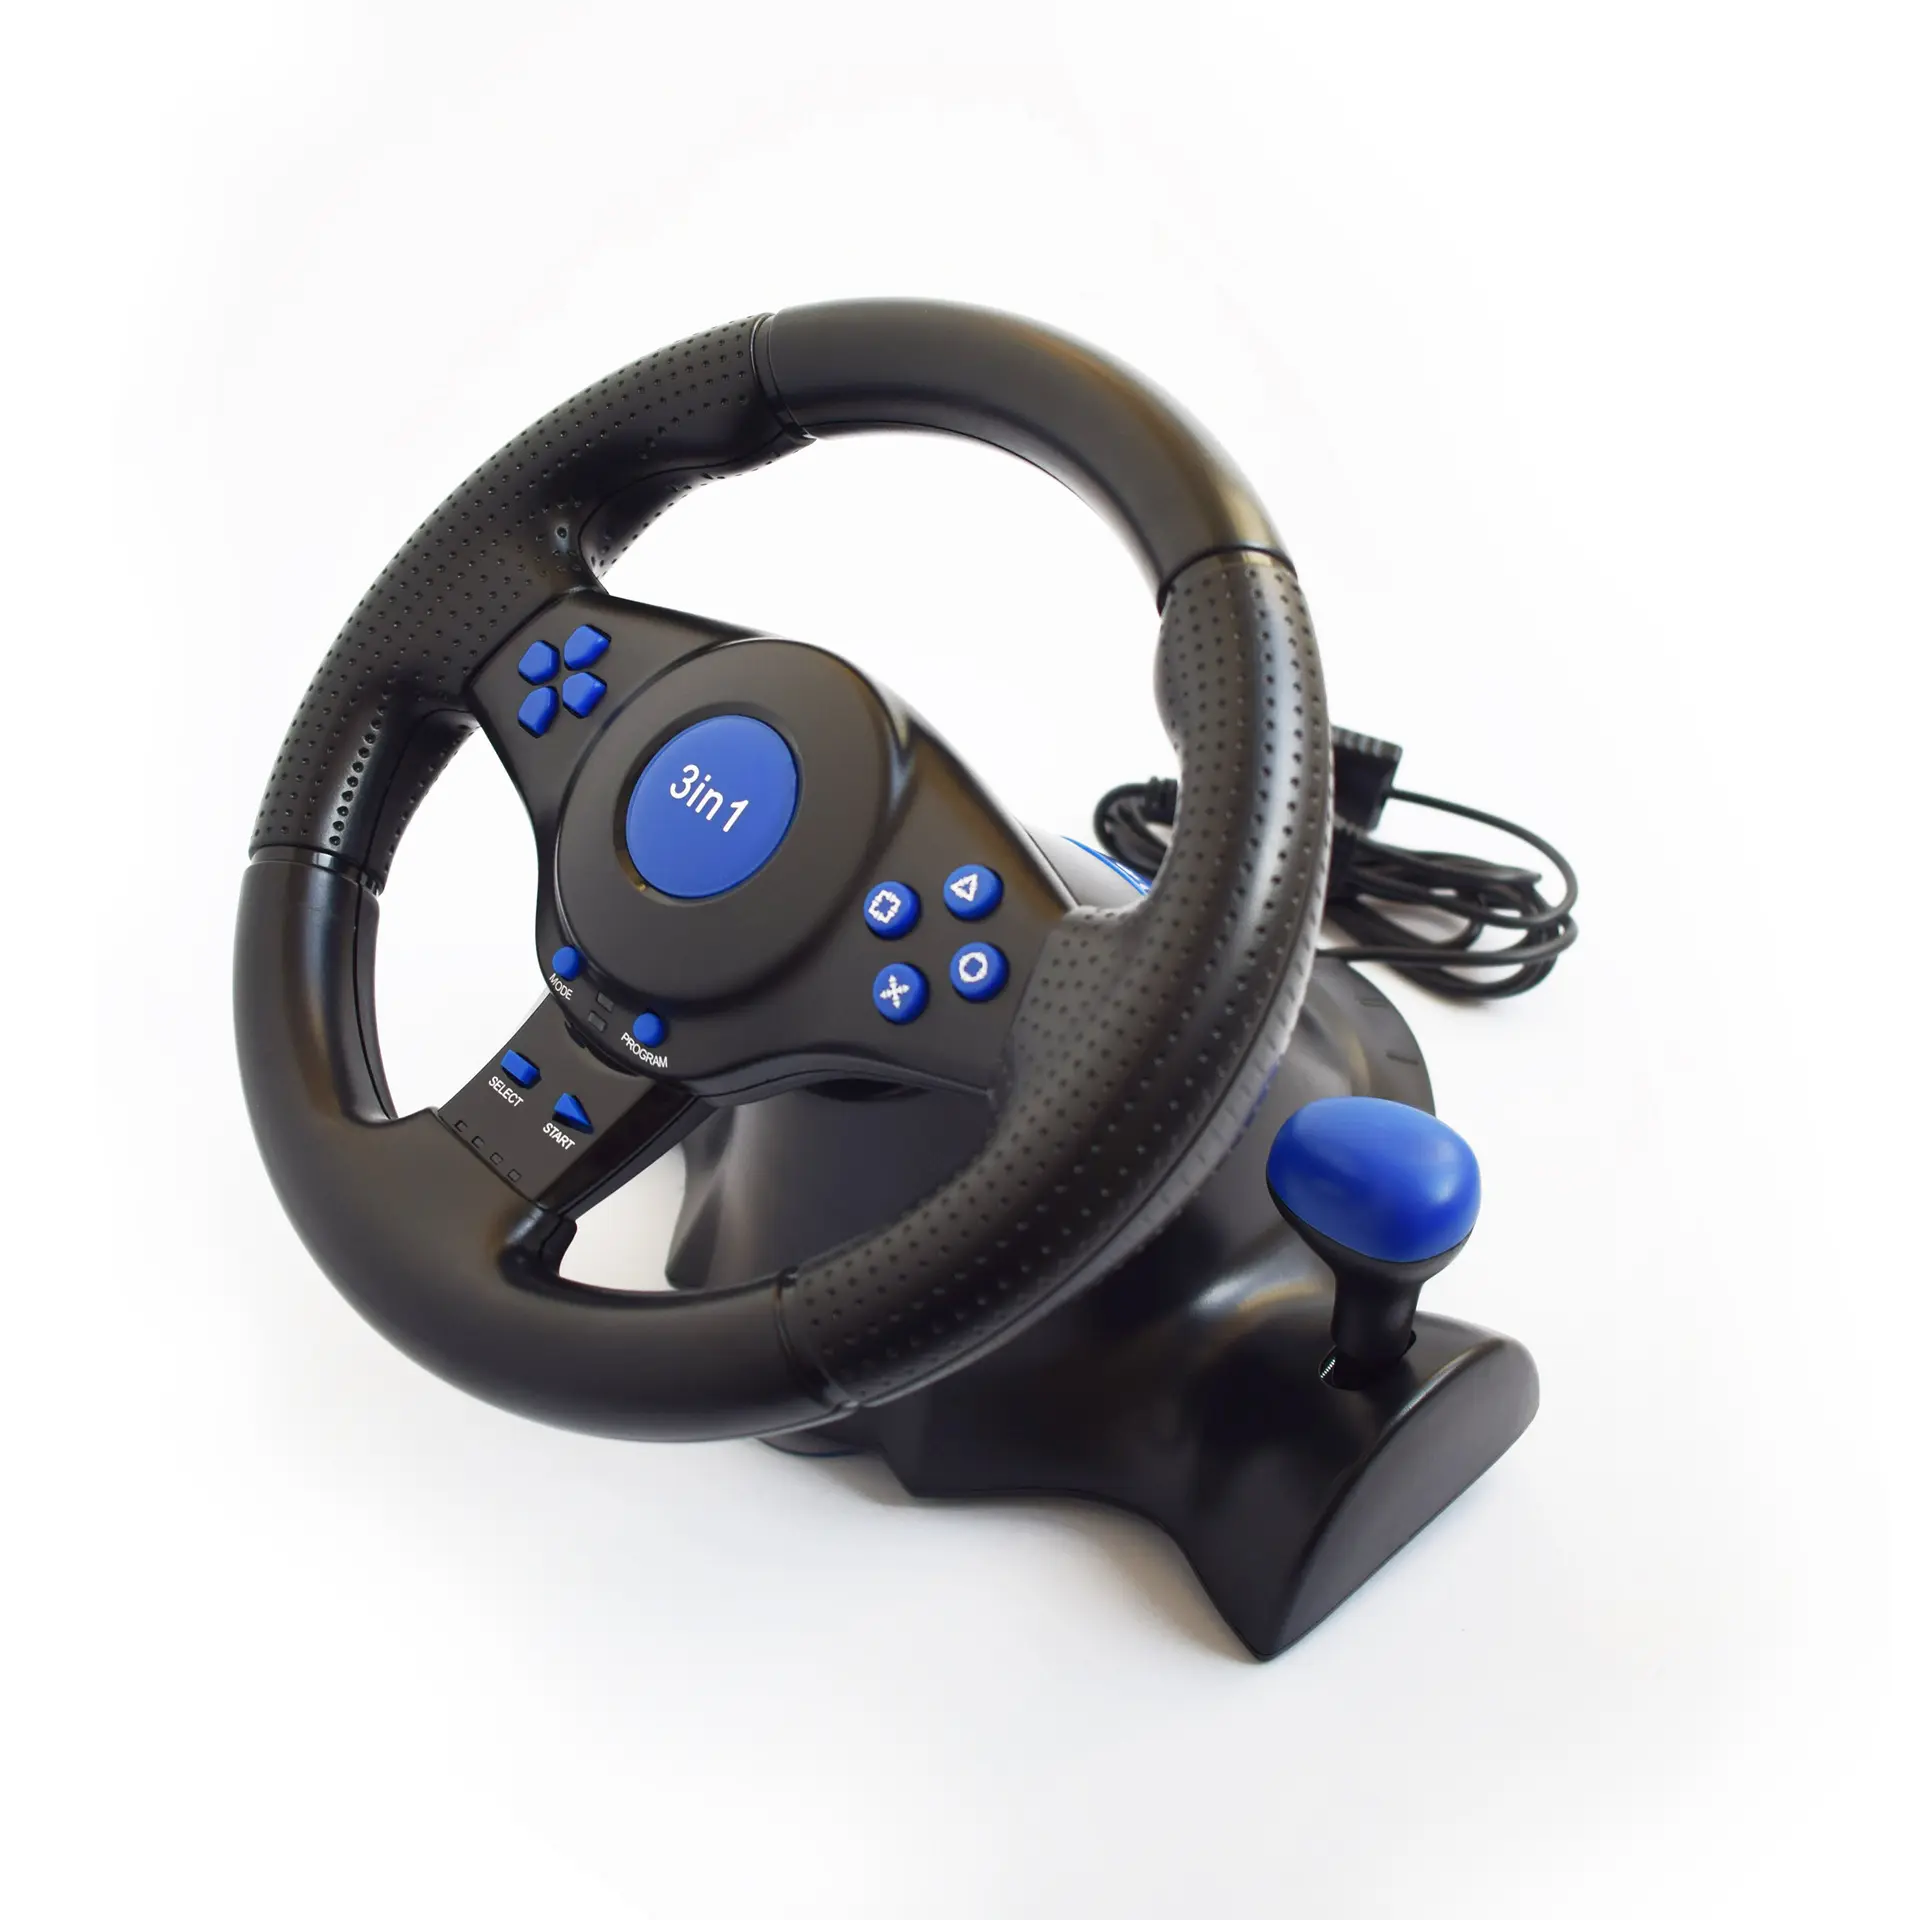 RALAN PS2 puerto dual USB para juegos de ordenador PS3 volante coche de carreras con sistema de pedal